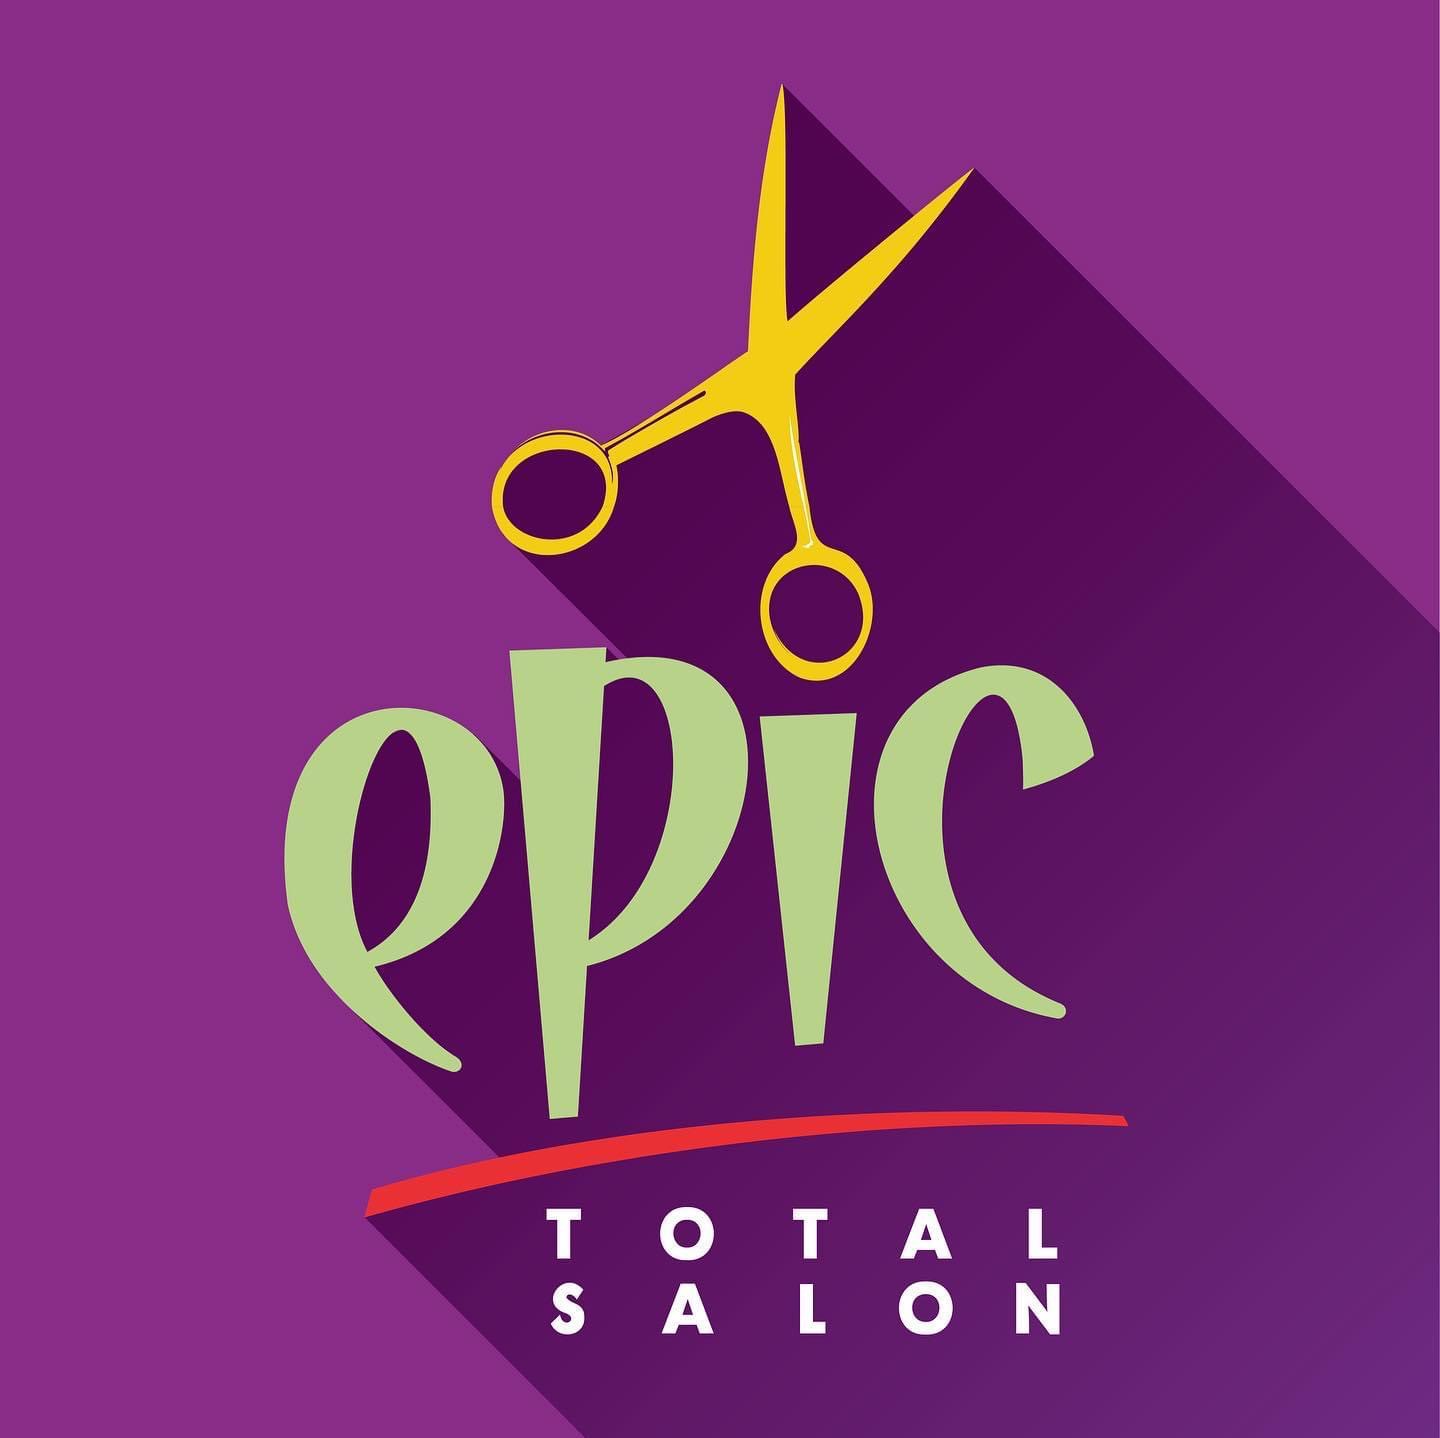 Epic Total Salon